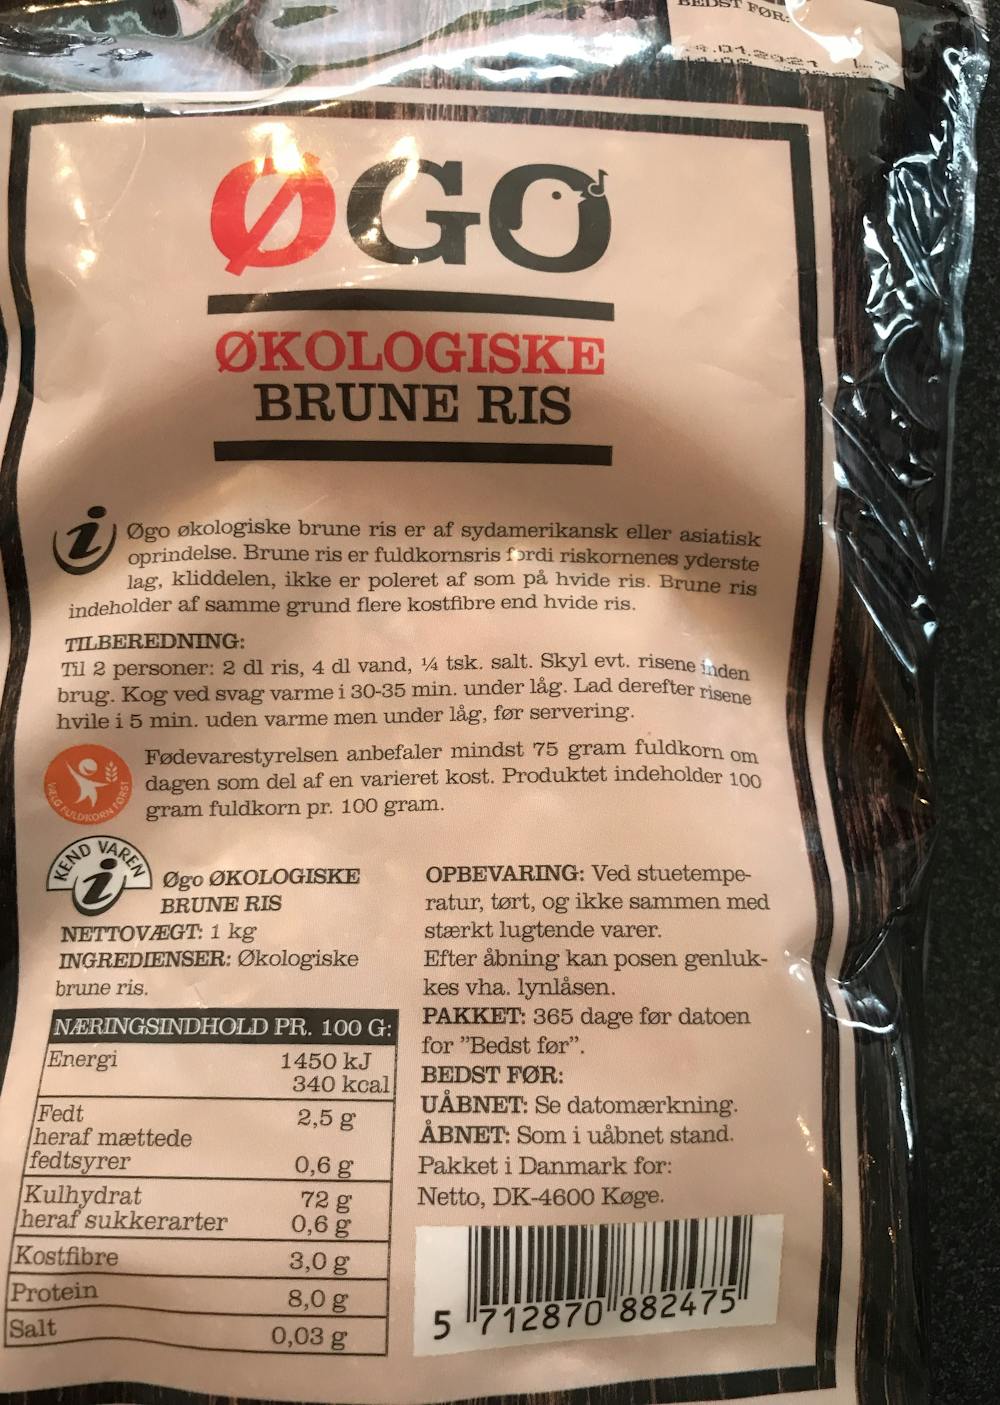 Ingredienslisten til ØGO Økologiske brune ris